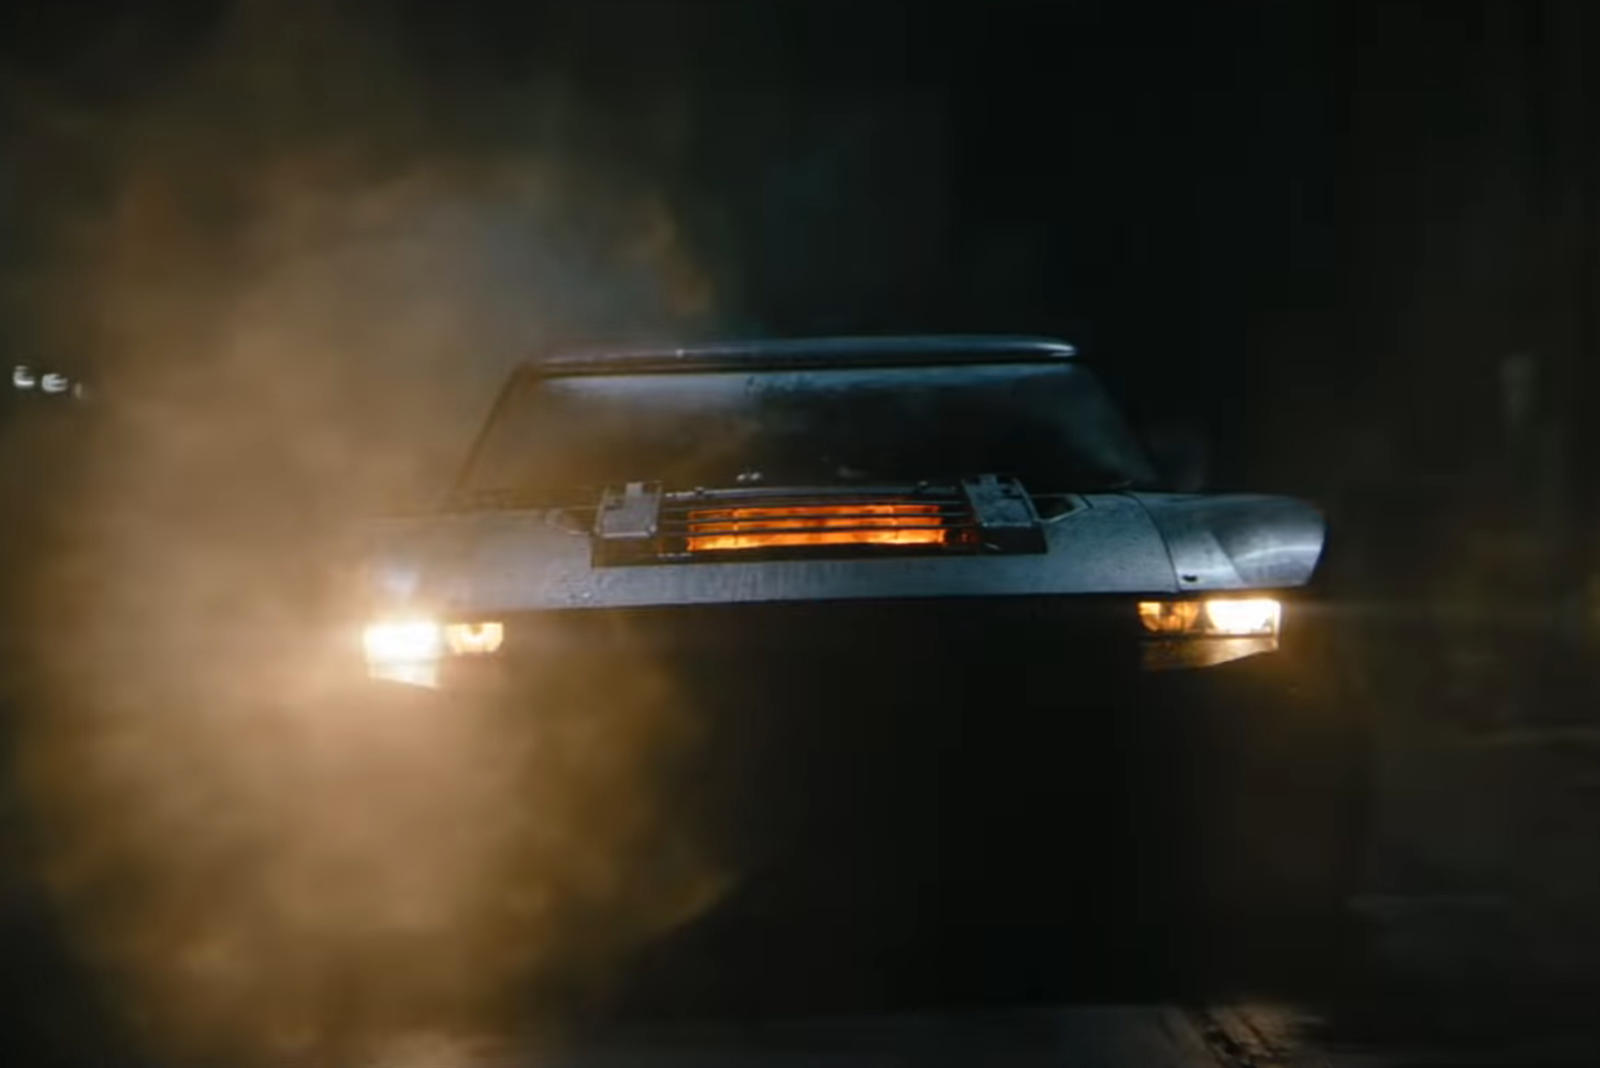 سيارة باتموبيل الجديدة تظهر في إعلان فيلم باتمان القادم